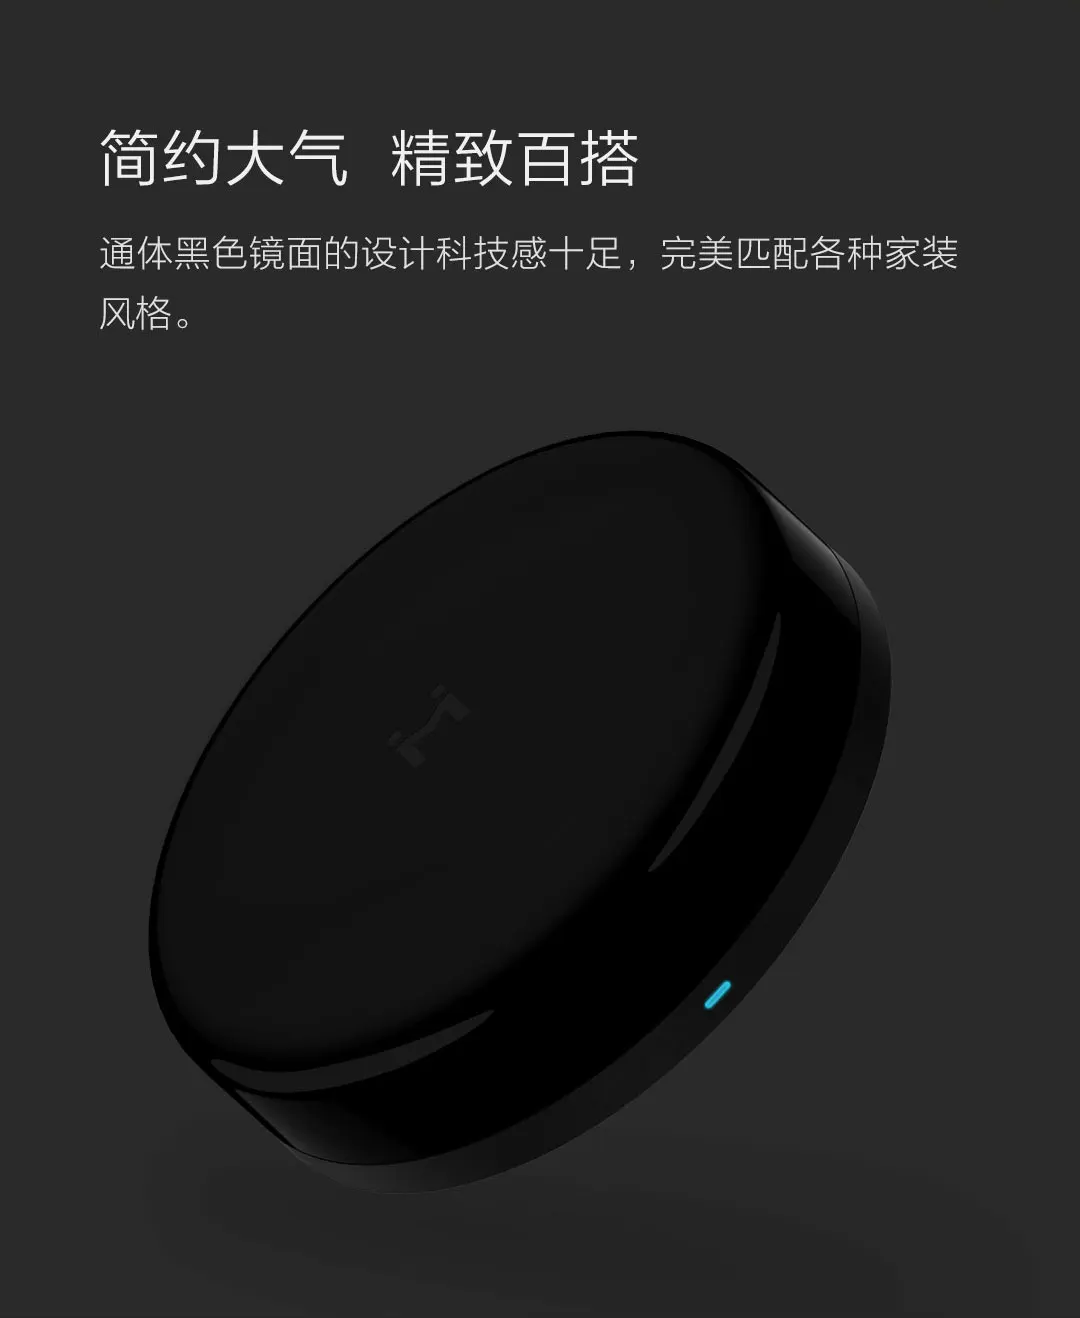 Xiaomi xiaobay универсальный пульт дистанционного управления Голосовая версия Встроенный Bluetooth шлюз пульт дистанционного управления Переключатель синхронизации центр управления